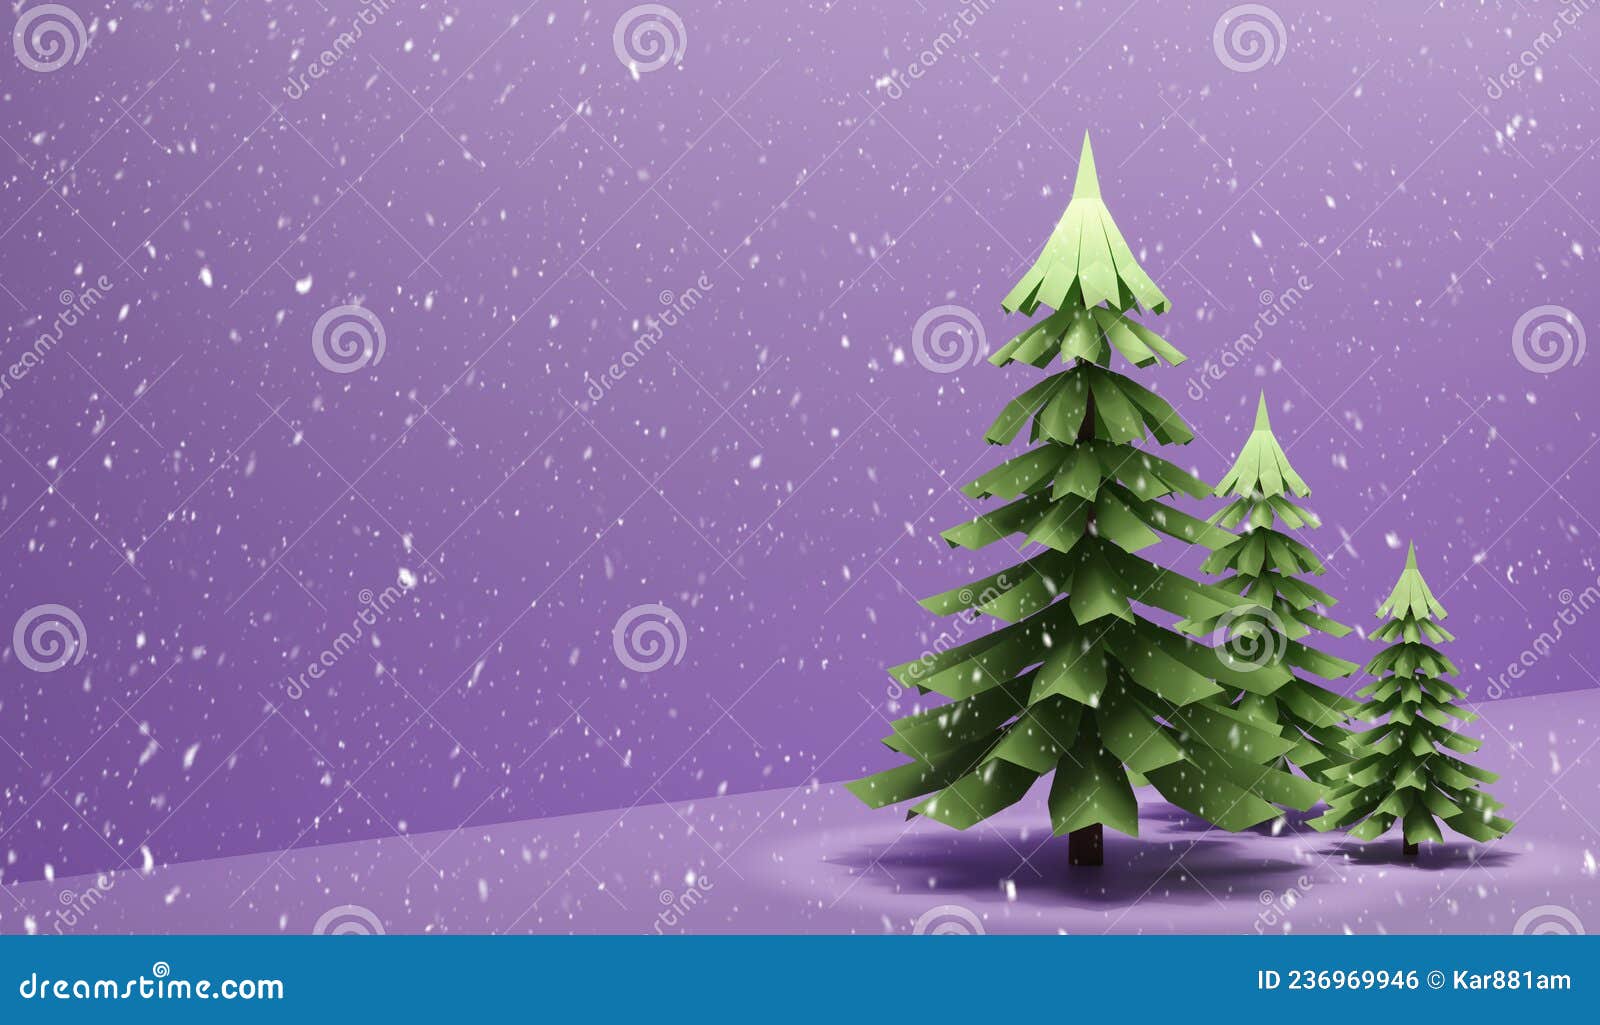 Christmas Background with Snow and Christmas Ball. Merry Christmas ...